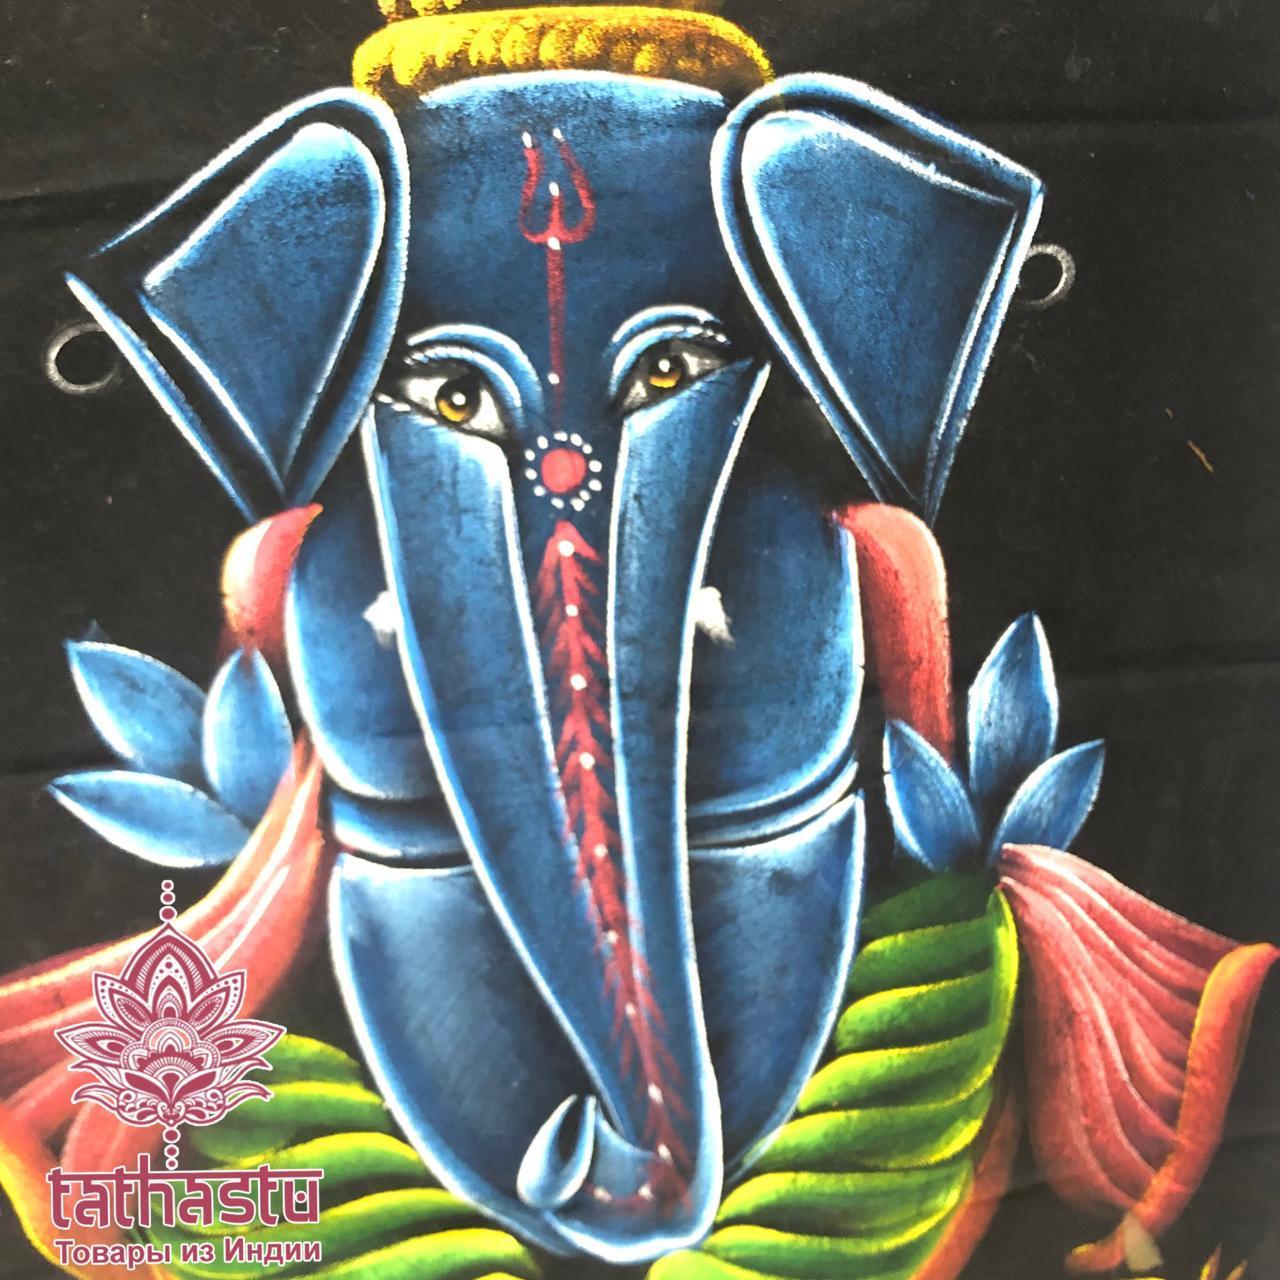 Настенные панно - Слон. Tathastu товары и индии